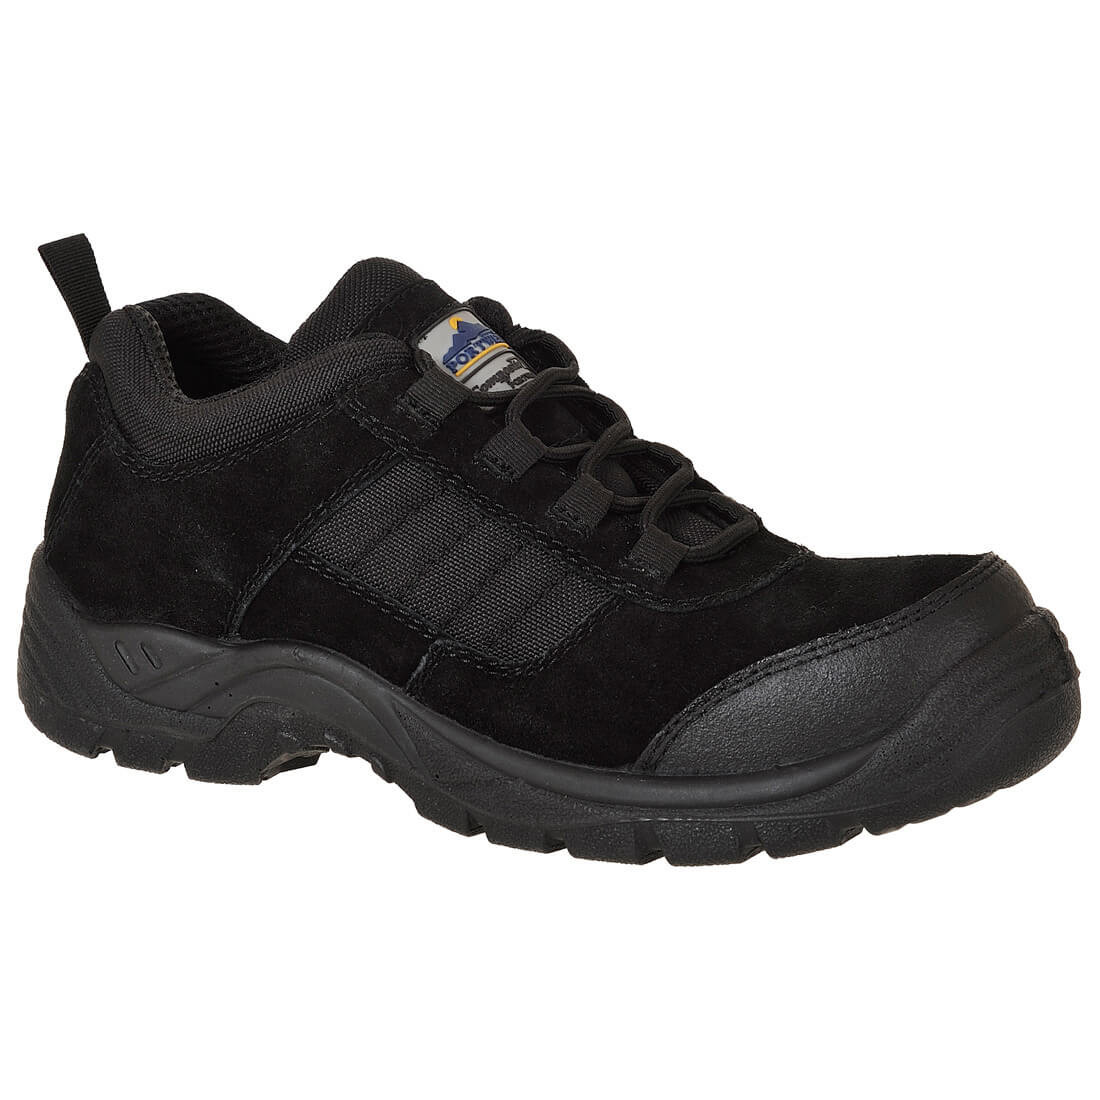 Zapato Compositelite™ Trouper S1 - Calzado de protección